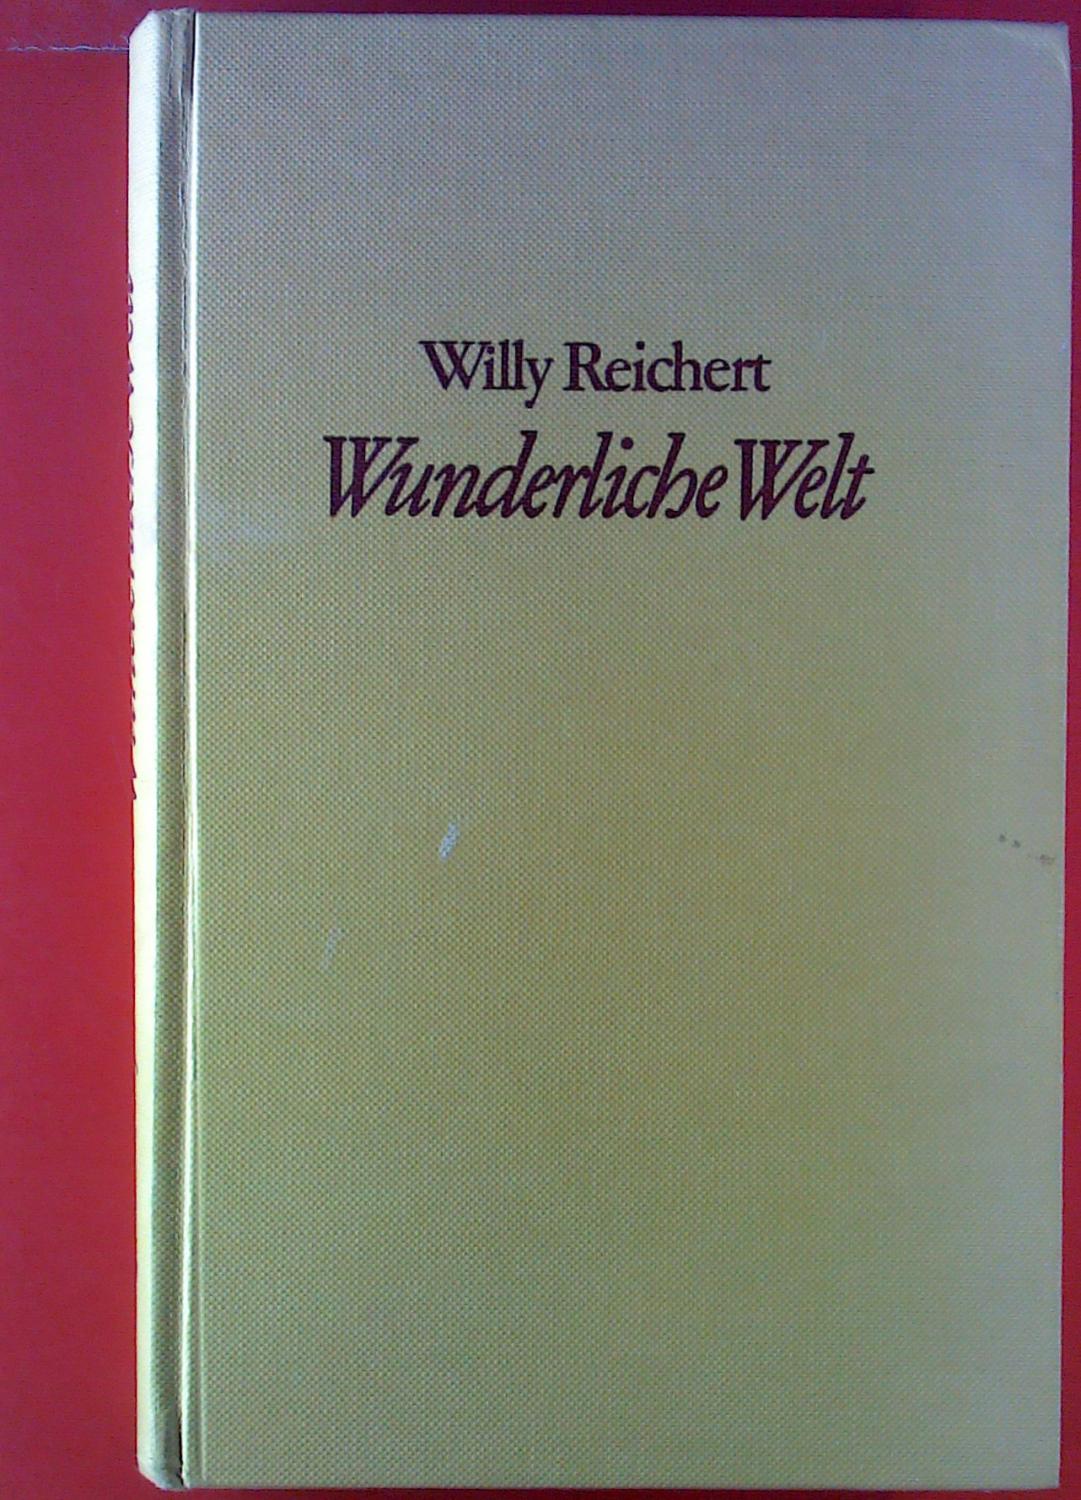 Willy Reichert. Wunderliche Welt. - Hrsg. Heinz Hartwig